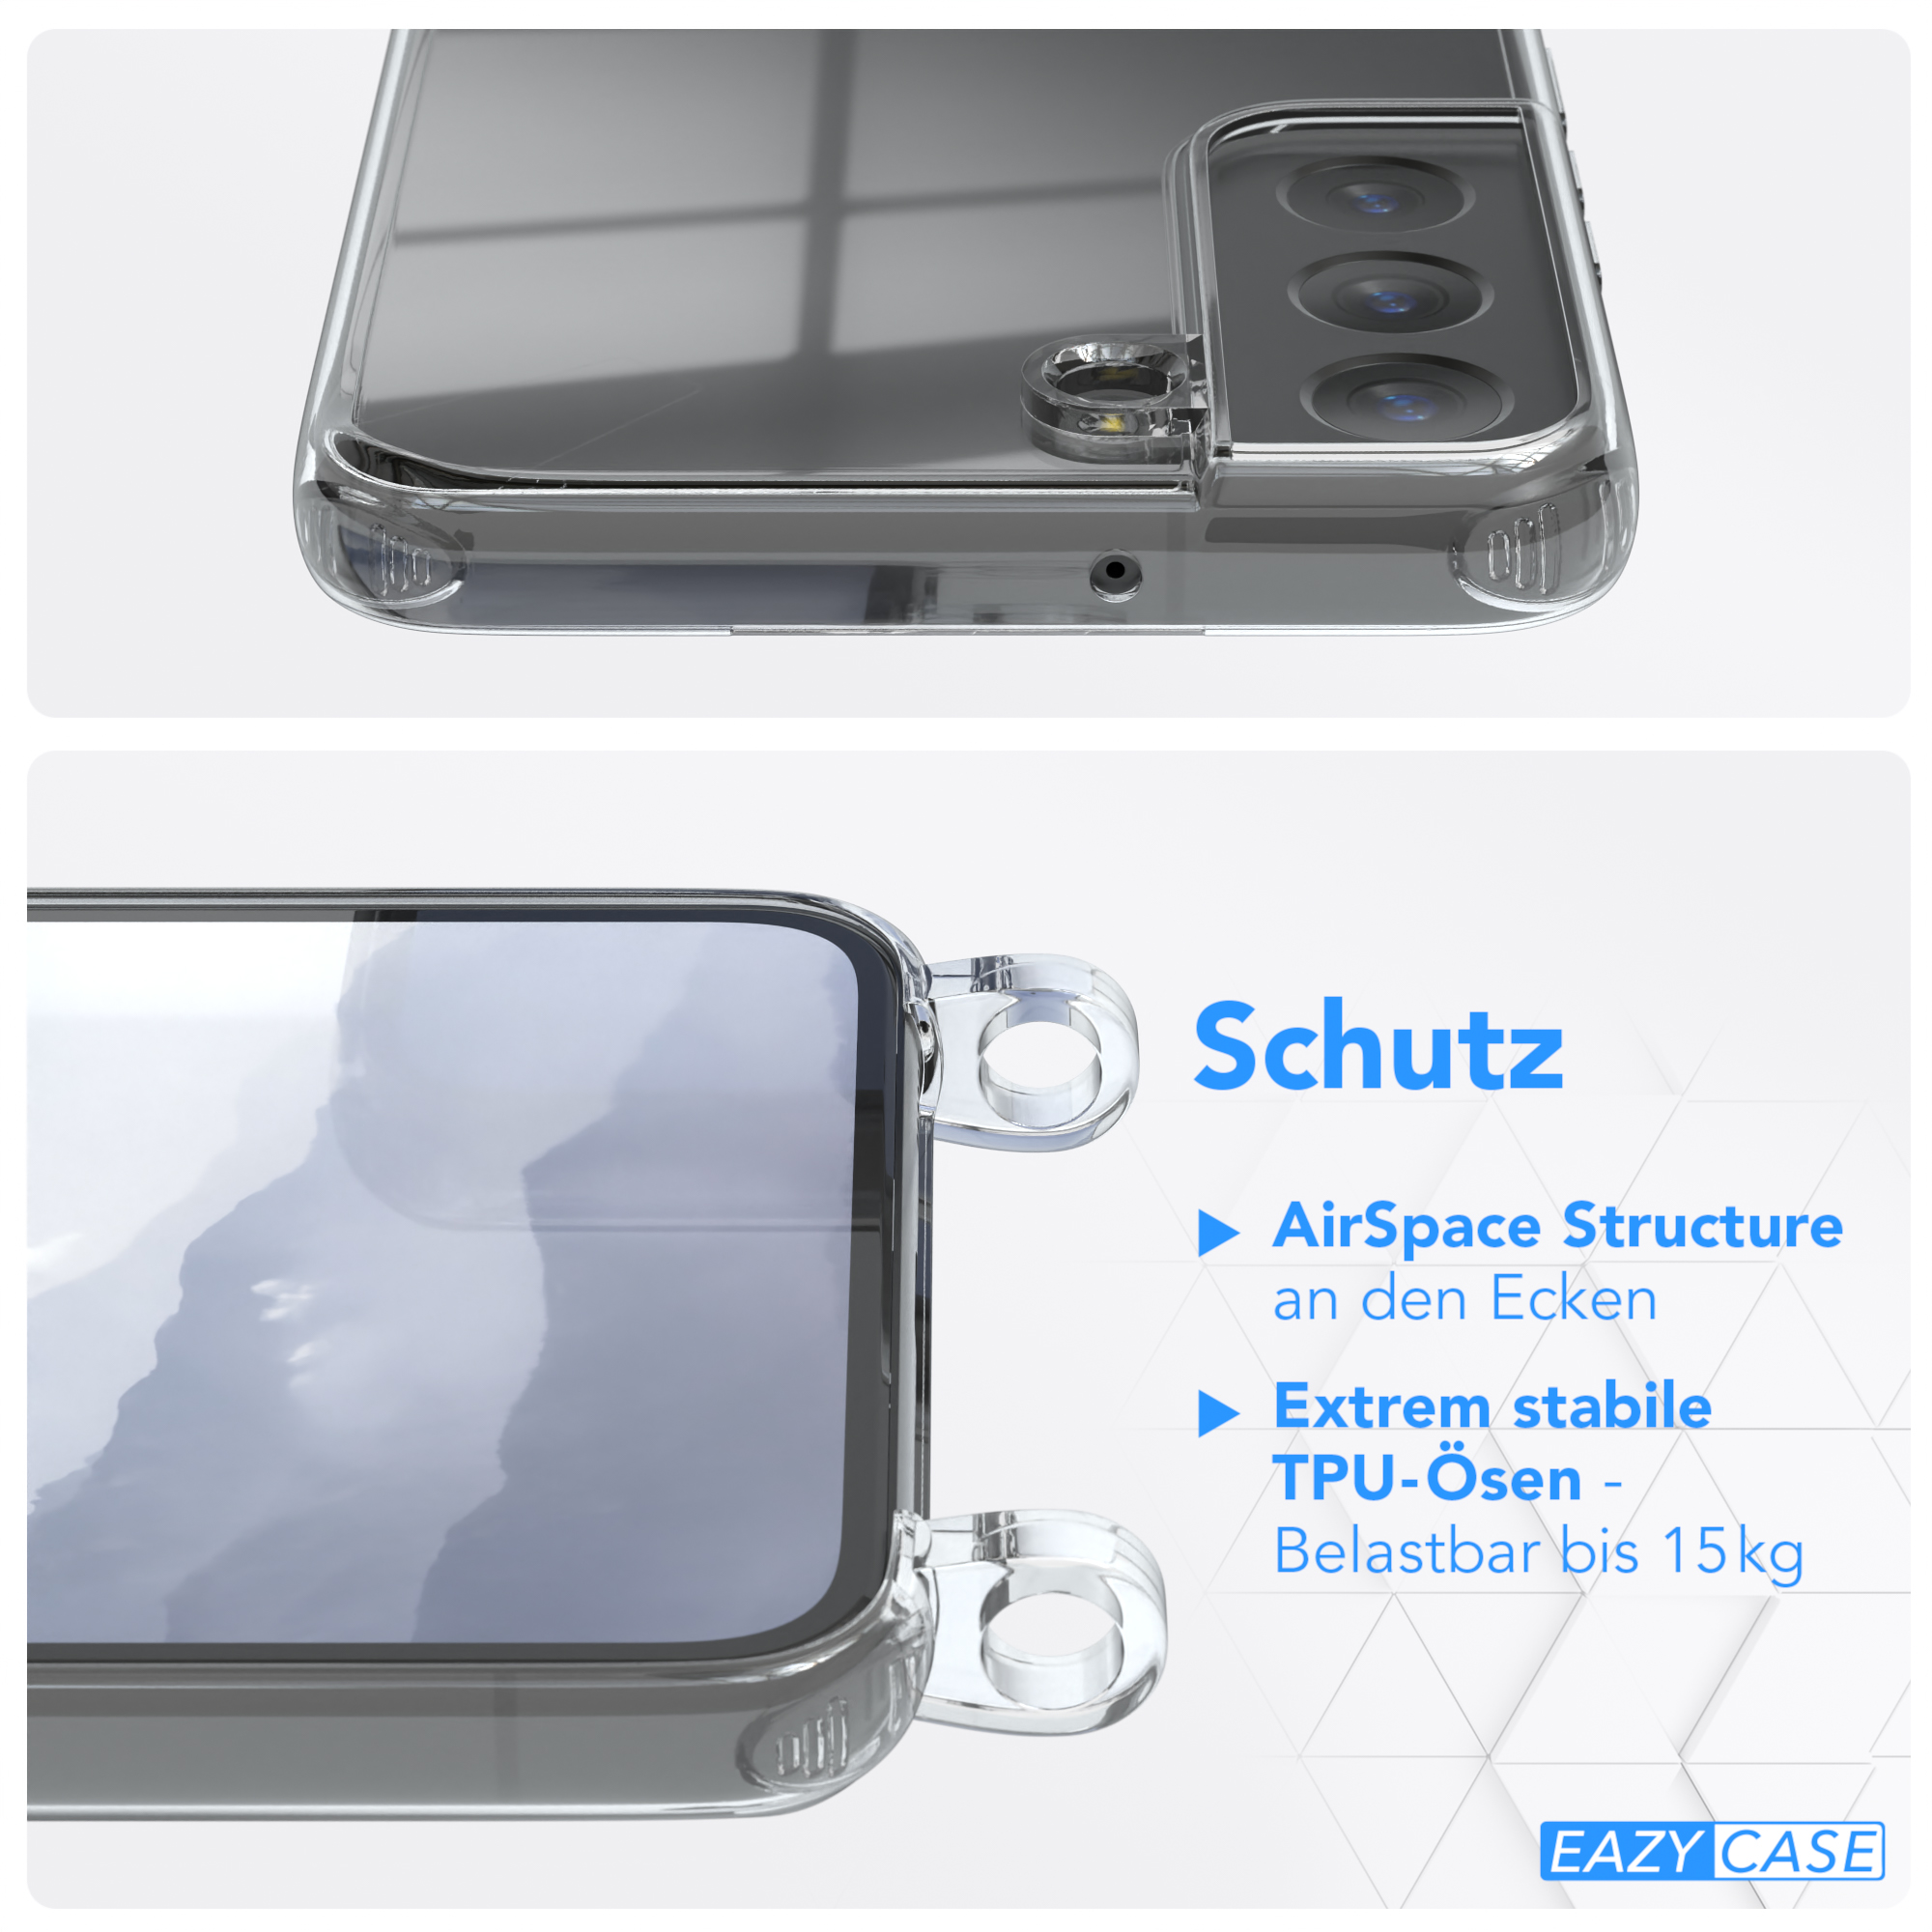 5G, Umhängetasche, Blau Clear Umhängeband, mit Samsung, S22 EAZY Cover Galaxy CASE